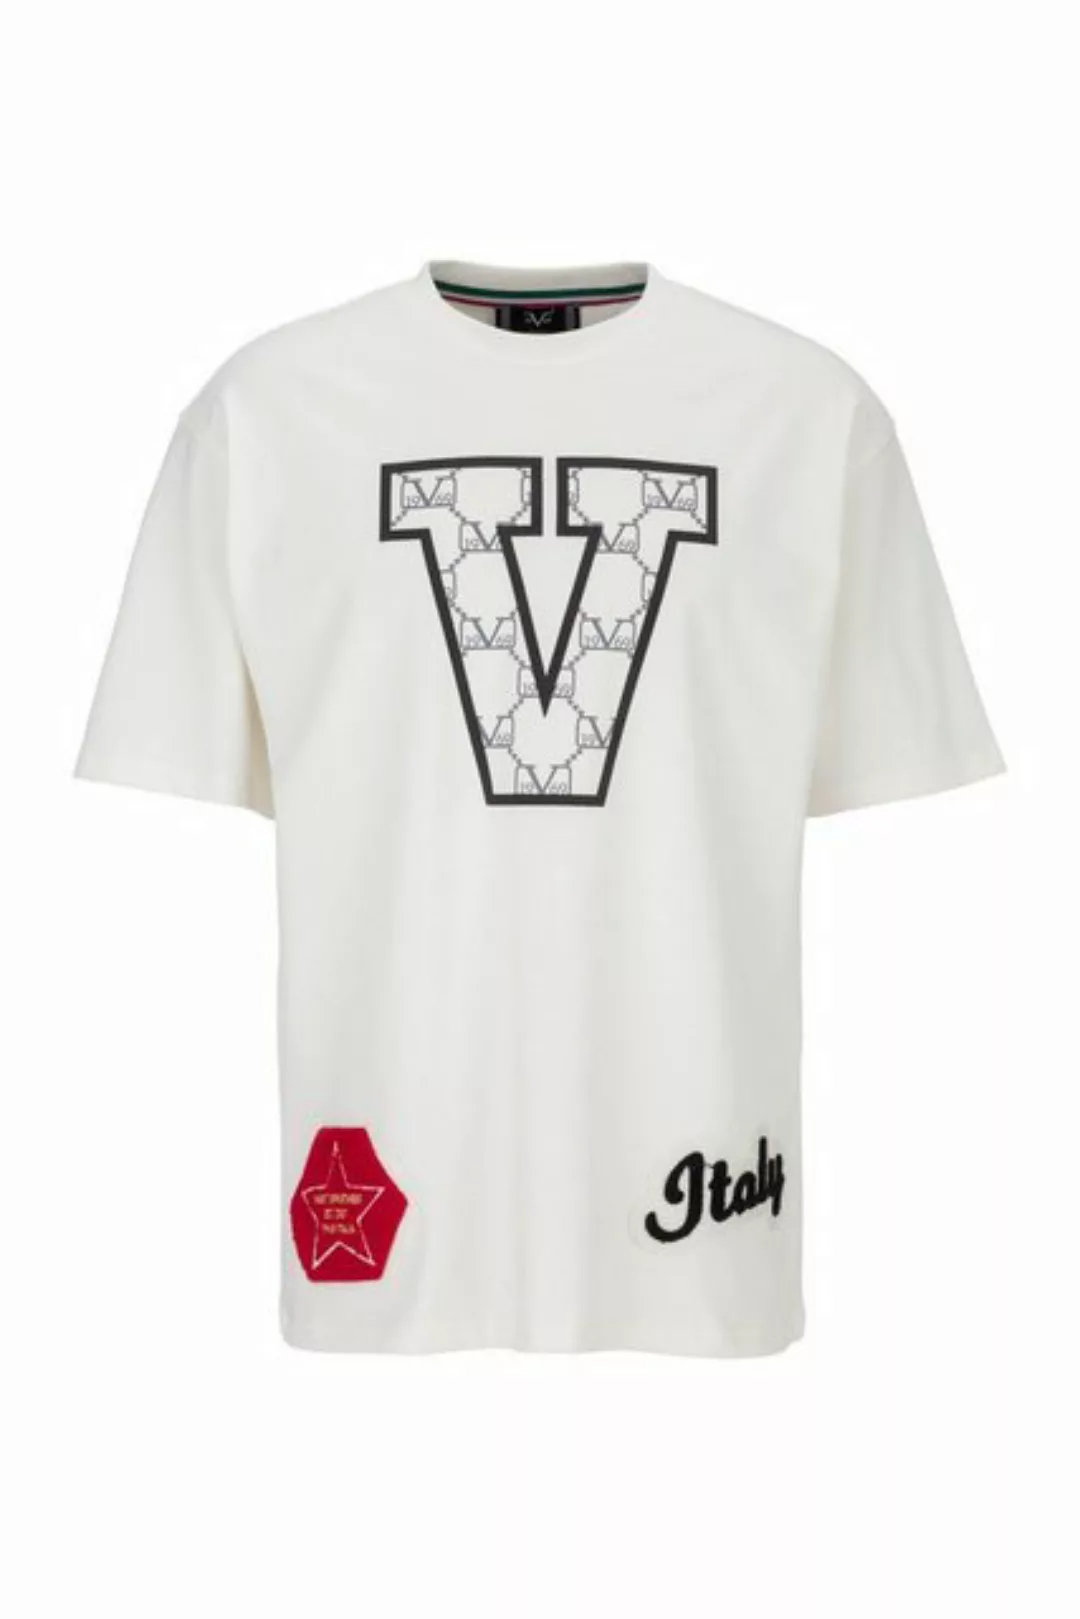 19V69 Italia by Versace T-Shirt TAMINO mit großem V auf der Brust - bestick günstig online kaufen